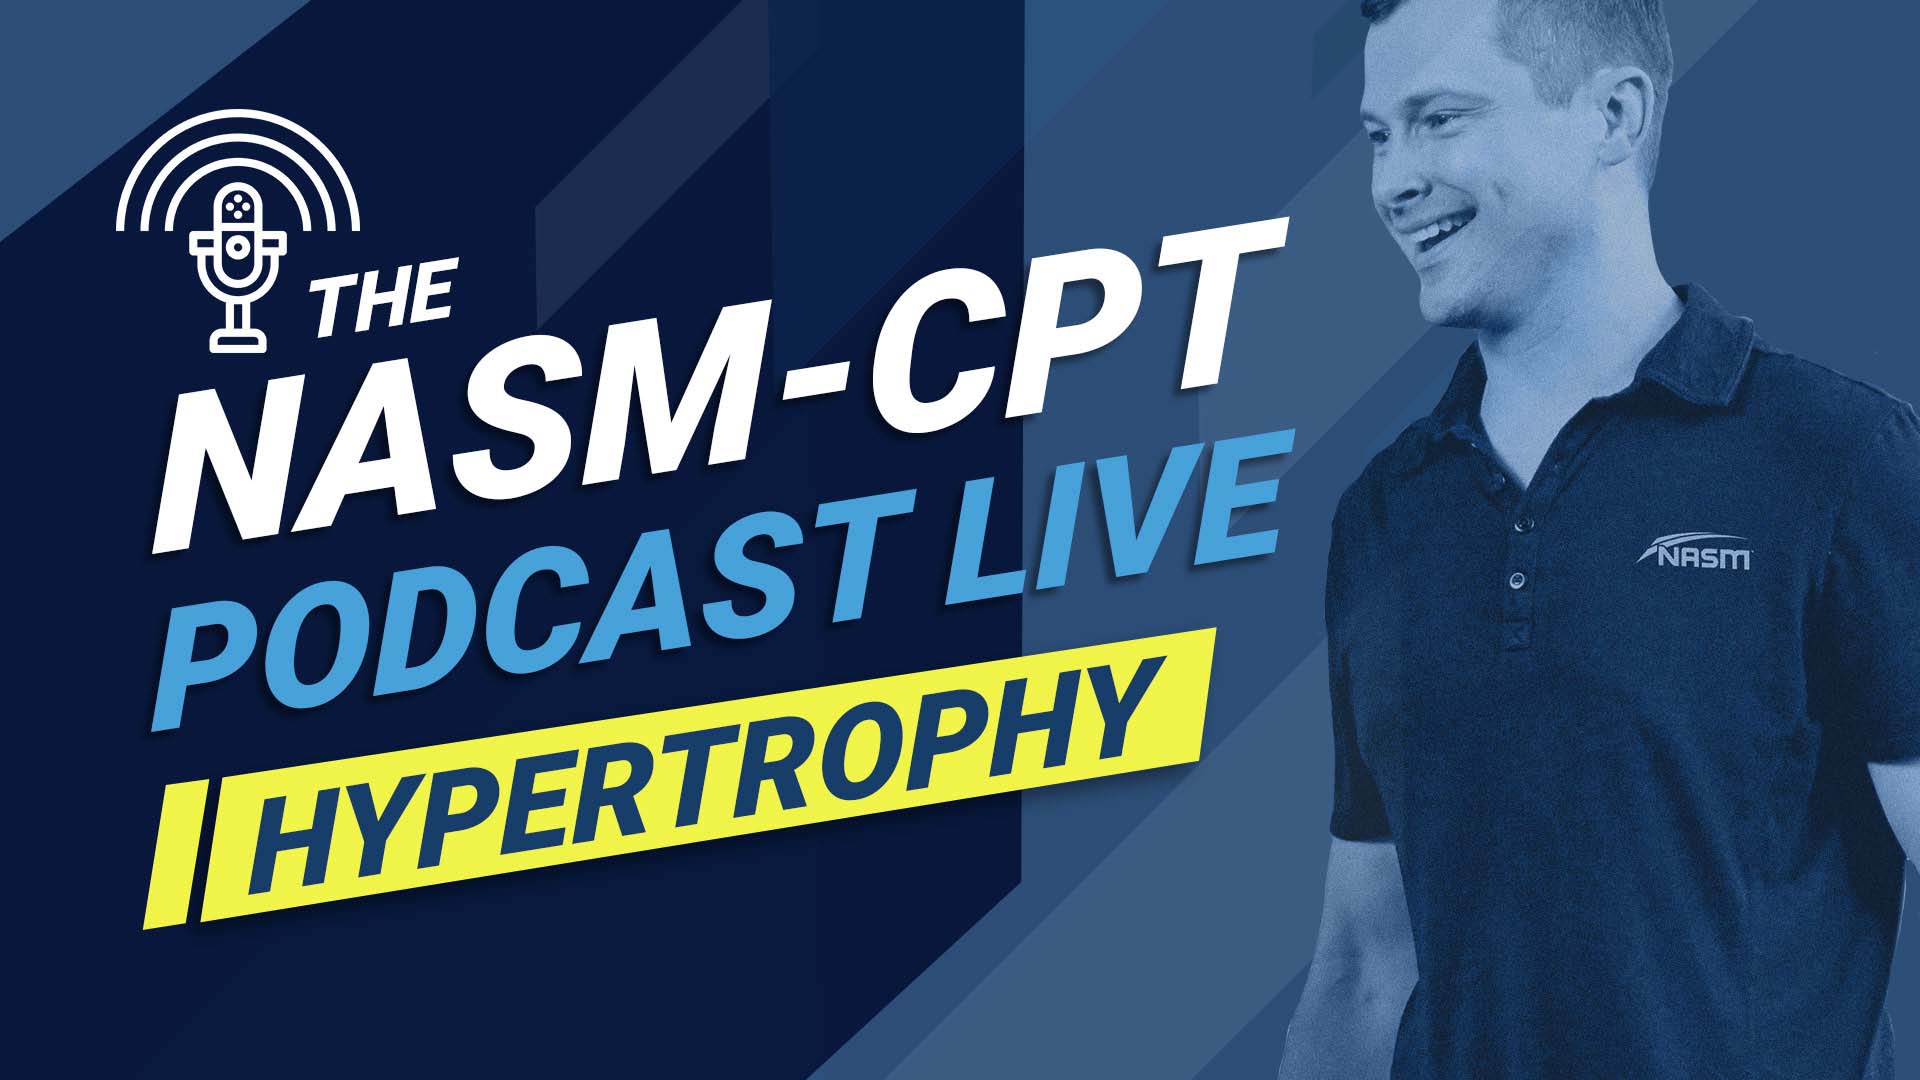 NASM-CPT Podcast Live Banner